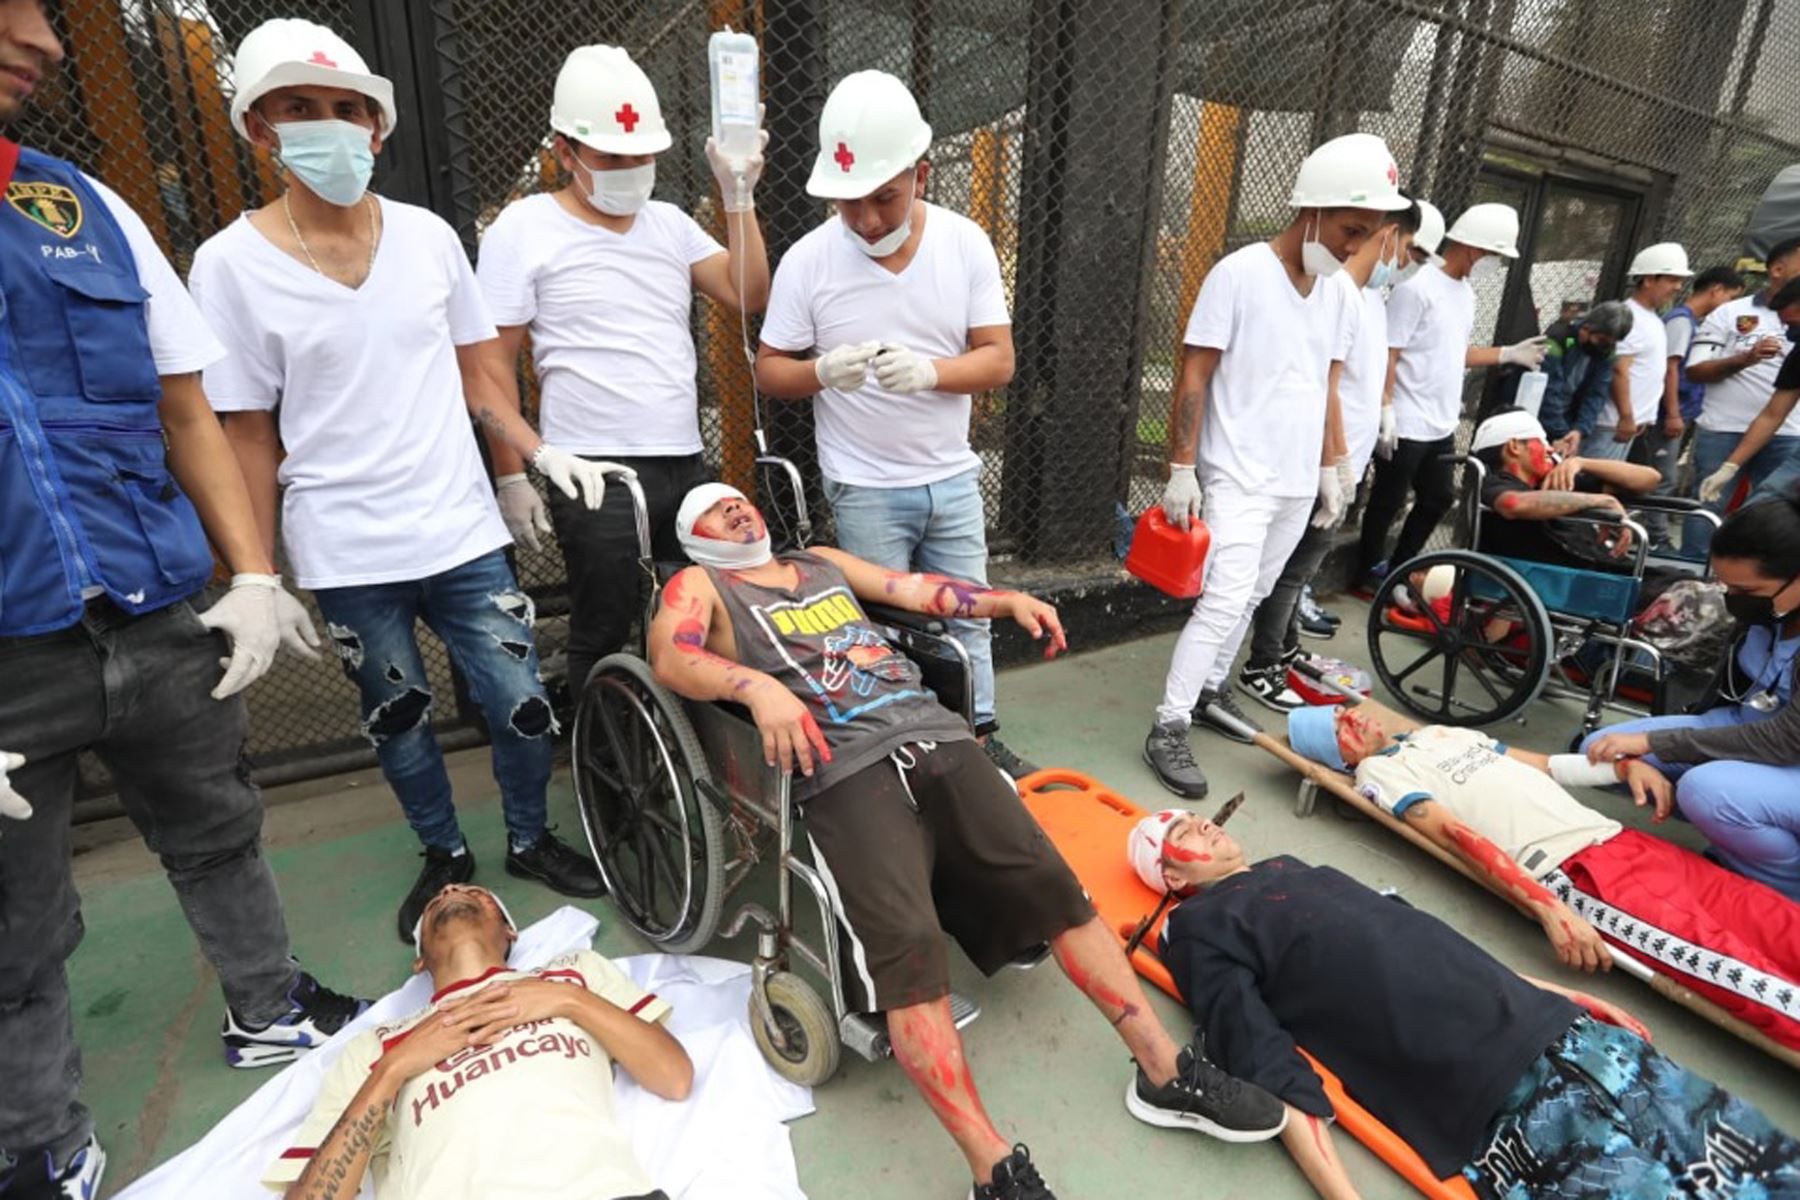 Internos del penal de Lurigancho participaron del simulacro nacional de sismo 2023, de 8.8 grados.Según el balance del simulacro de sismo en el penal de Lurigancho, el saldo fue de 400 heridos, más de 20 fallecidos y de 200 internos evacuados.
Foto: ANDINA/Daniel Bracamonte